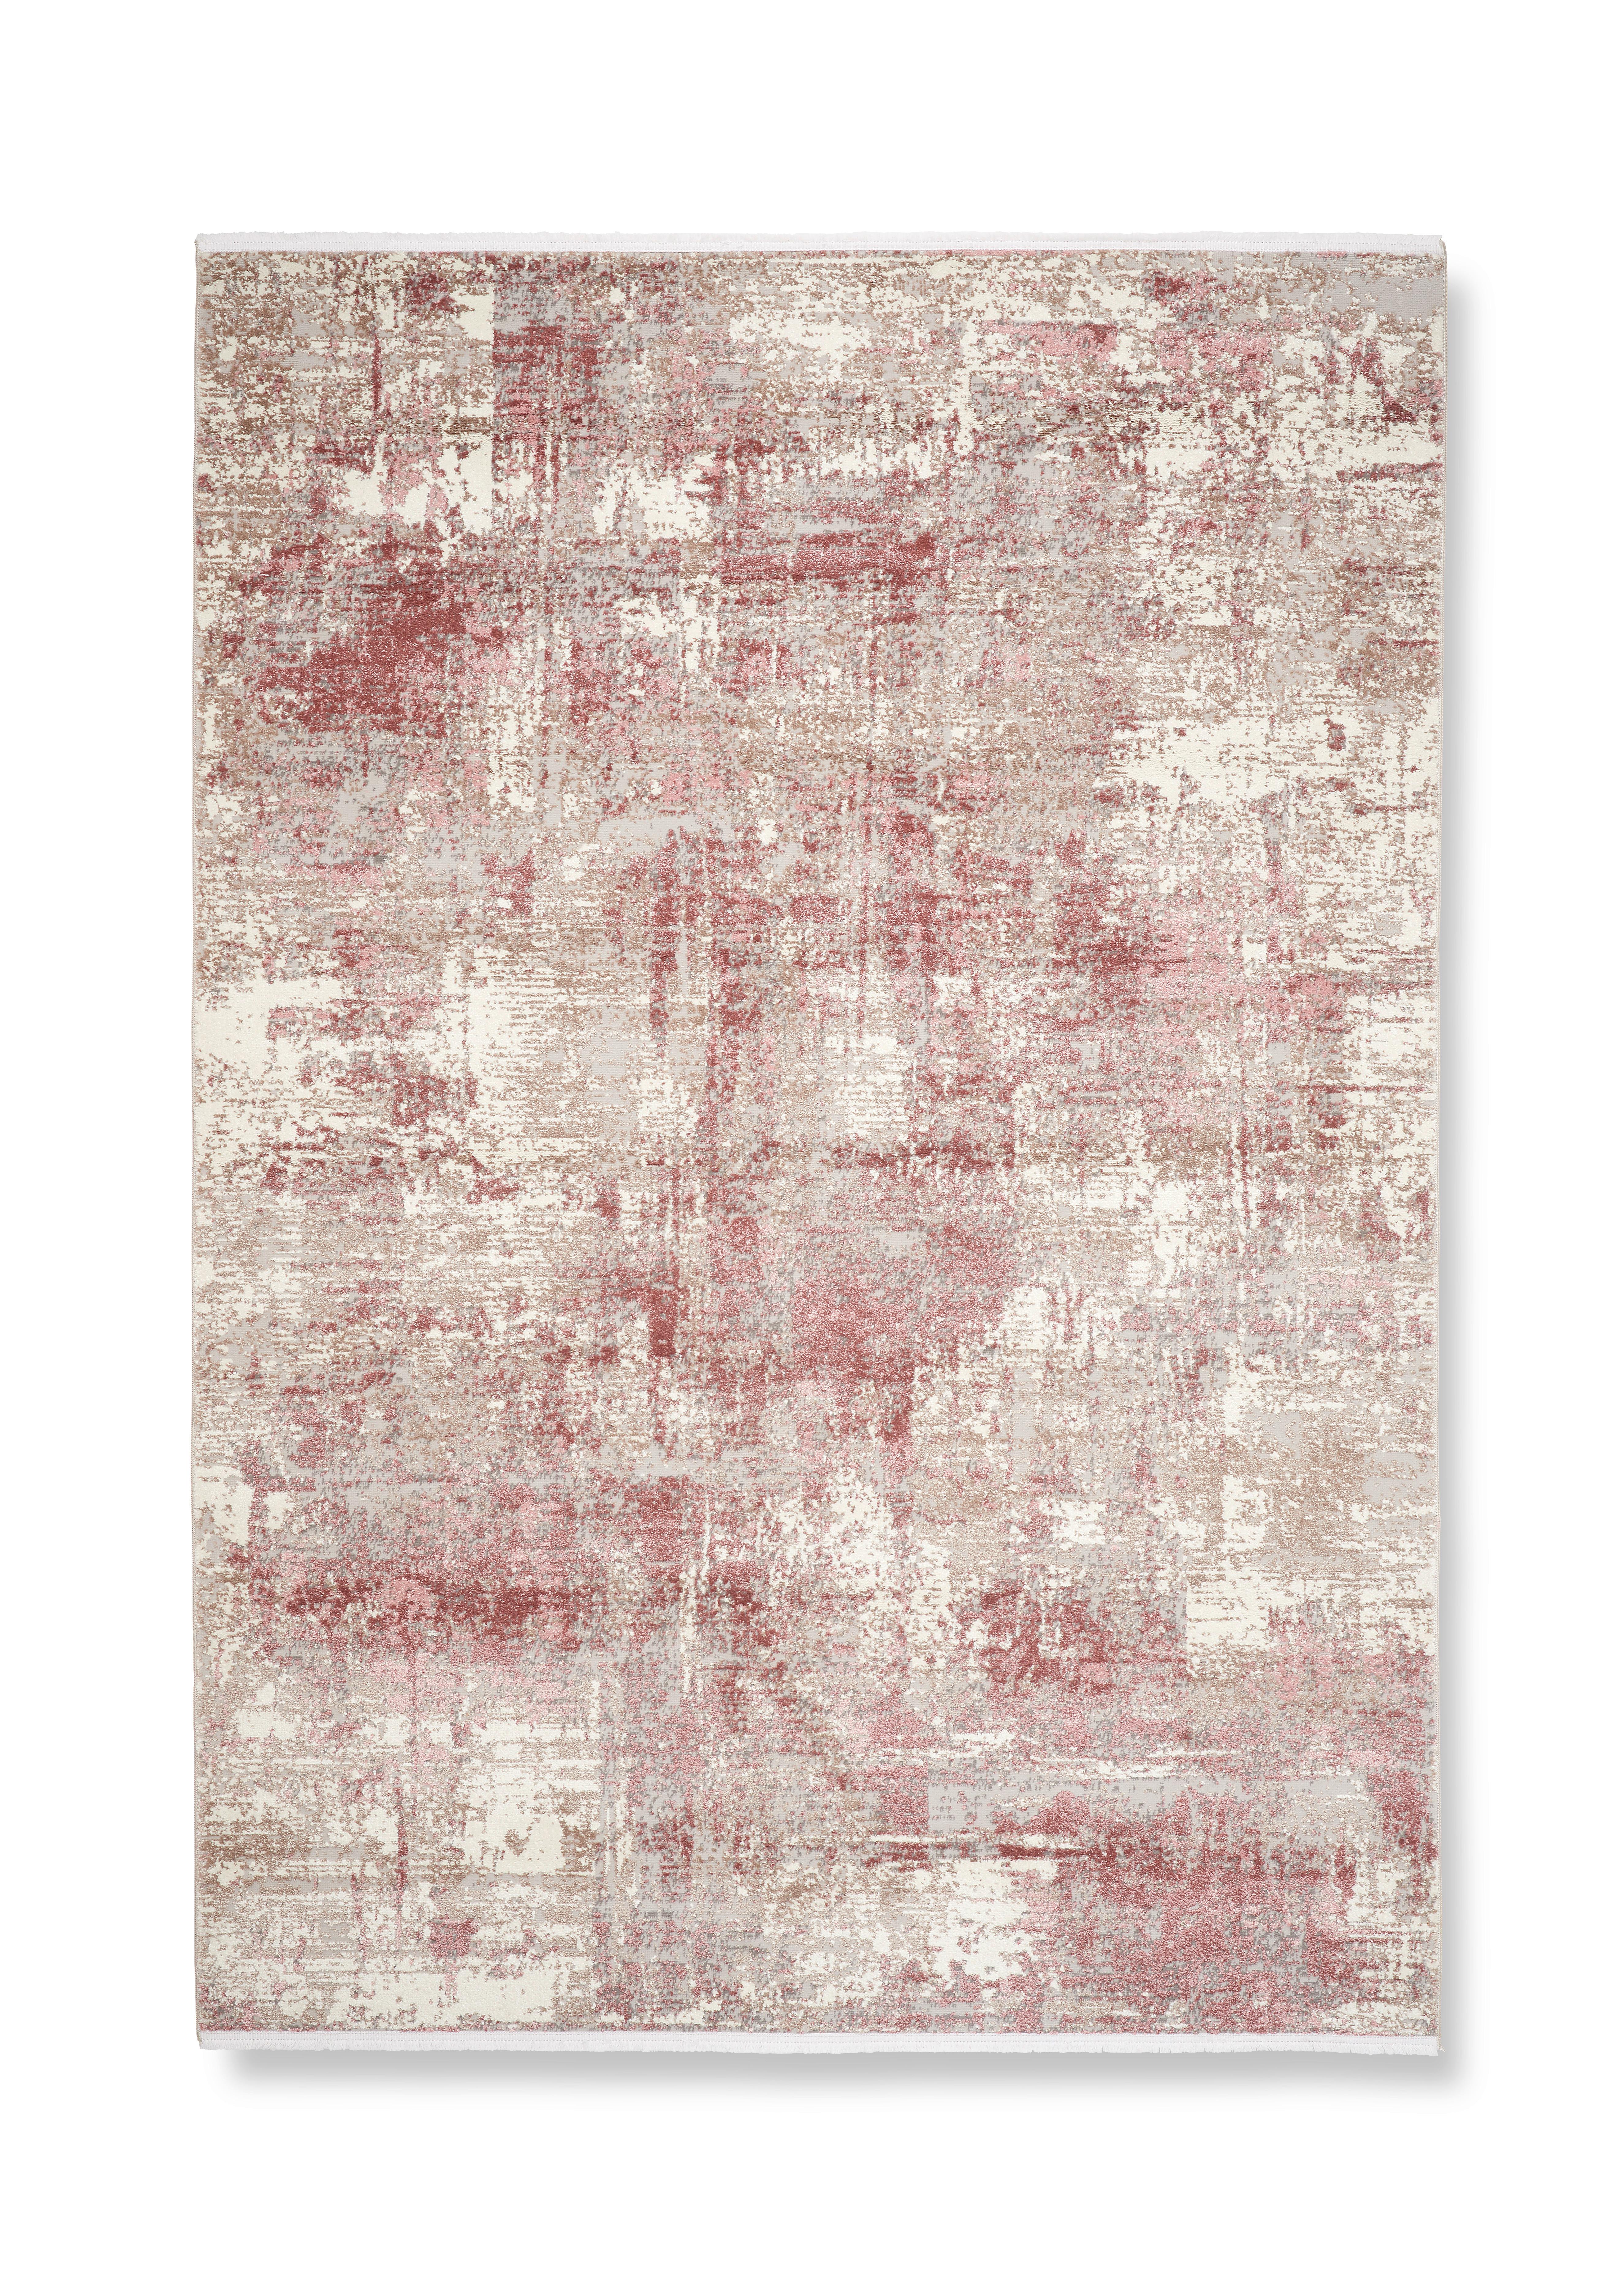 Tkaný Koberec Malik 1, 80/150 Cm - pink/krémová, Moderní, textil (80/150cm) - Modern Living